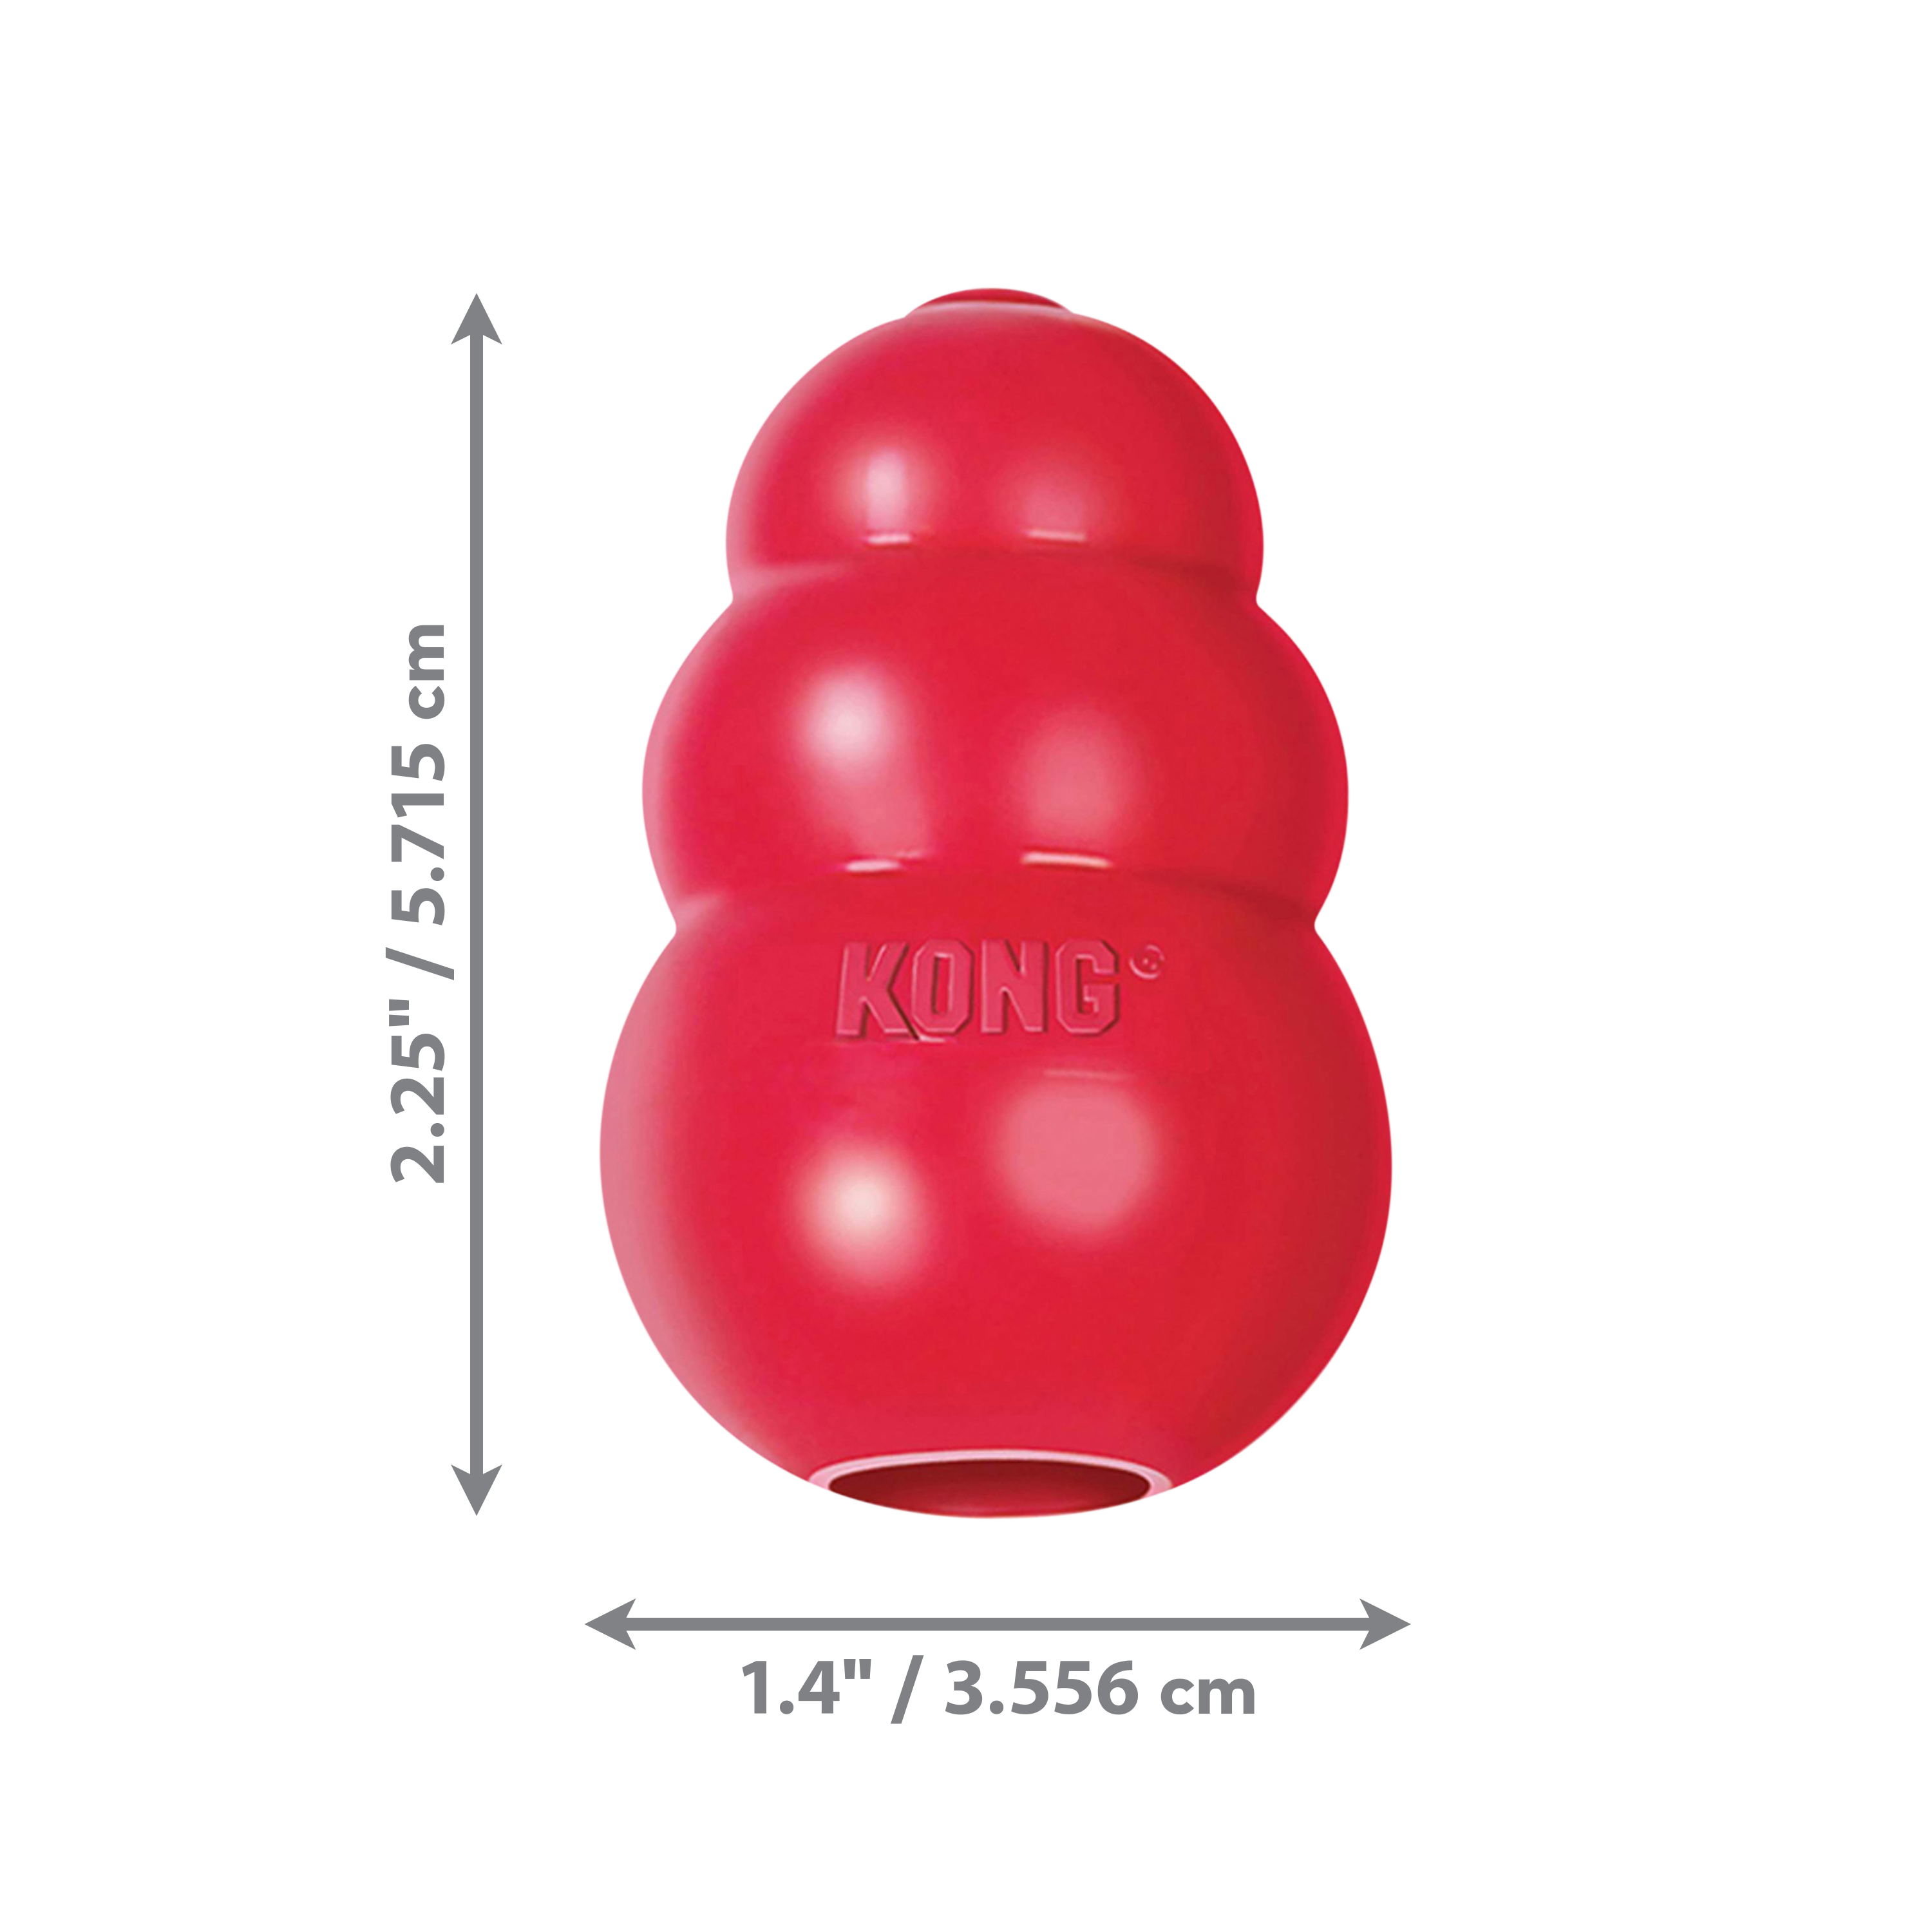 Imagem do produto KONG Classic